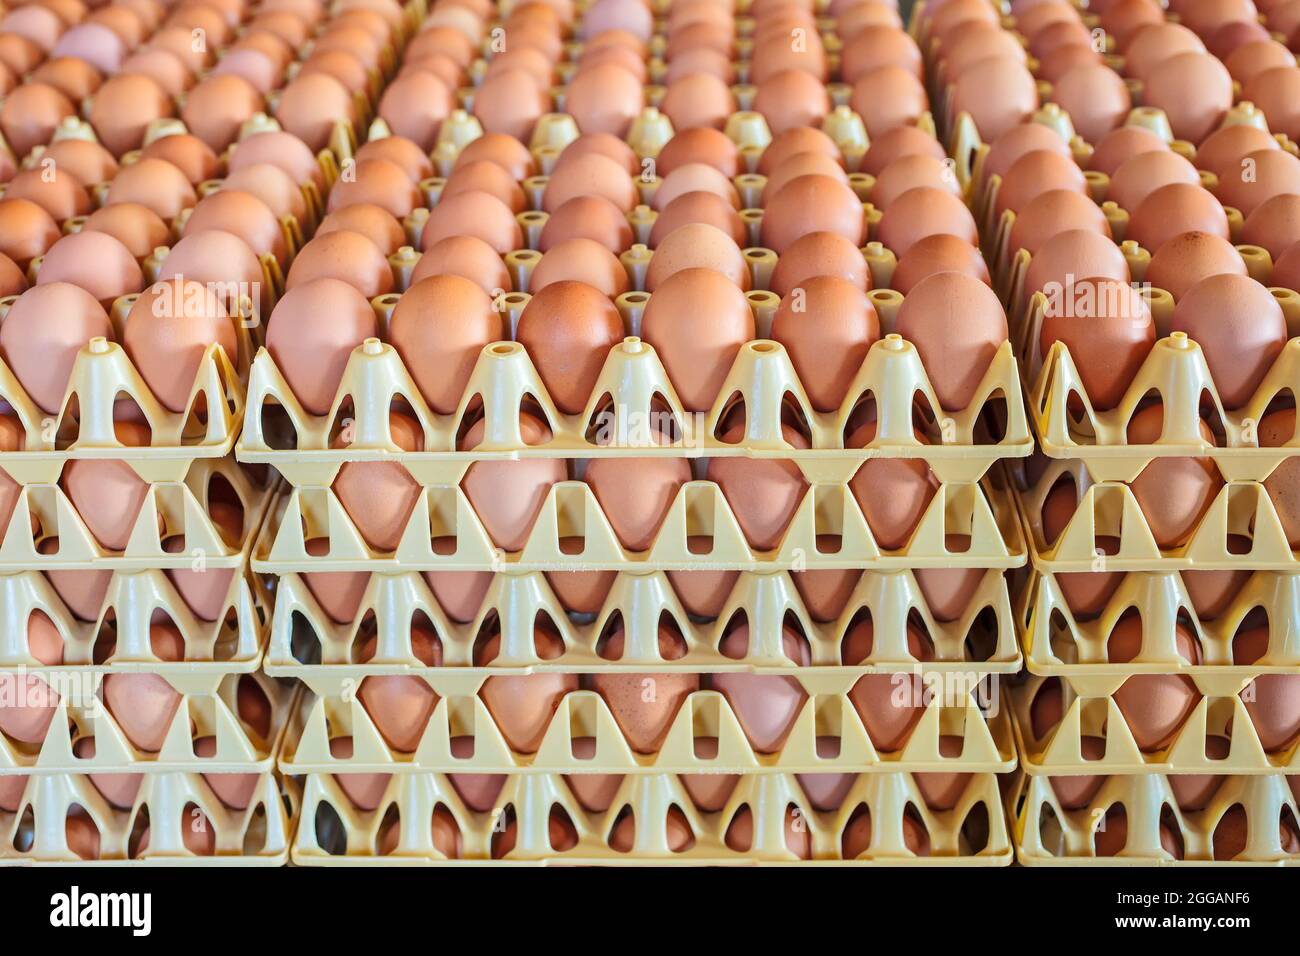 Caisses en plastique avec œufs frais blancs et bruns sur une ferme de poulet biologique Banque D'Images